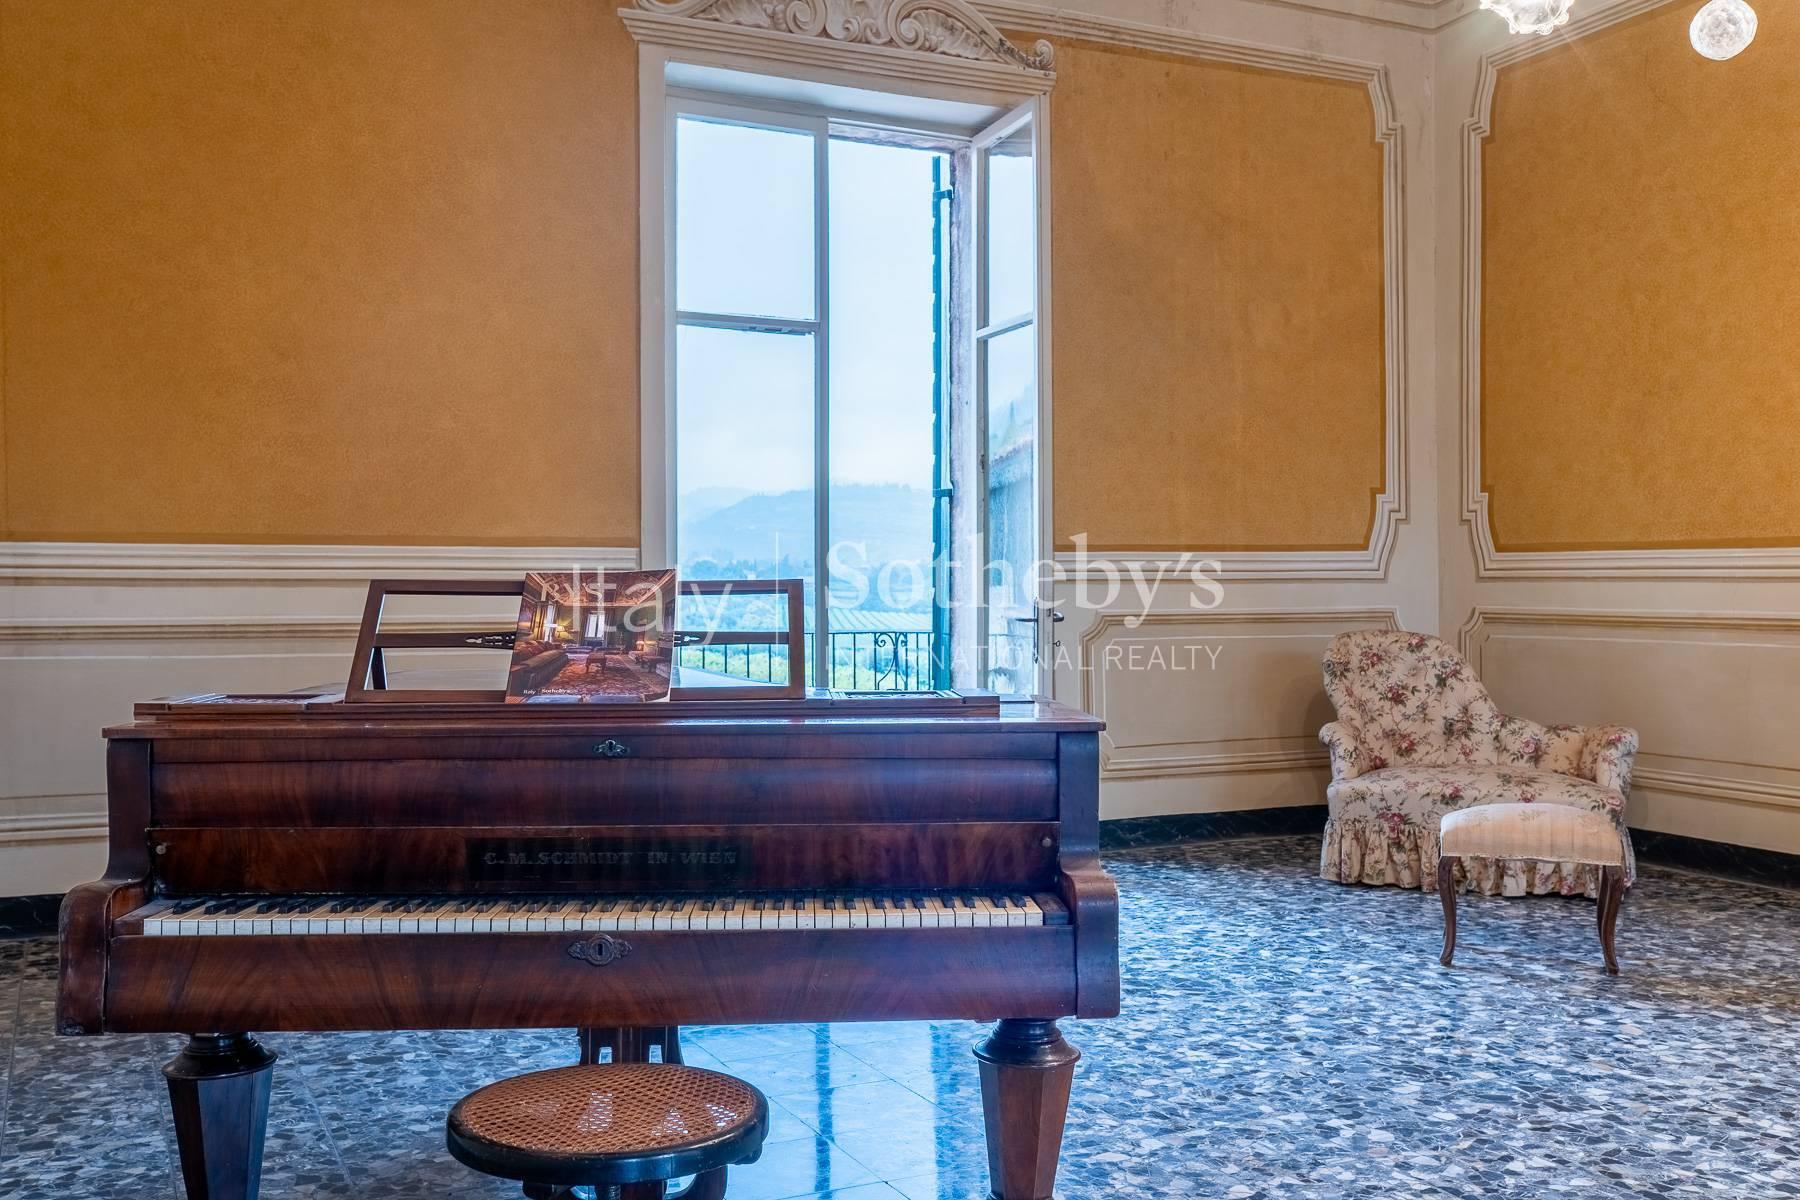 Affascinante Villa Veneta con vigneto nel cuore della Valpolicella classica - 5